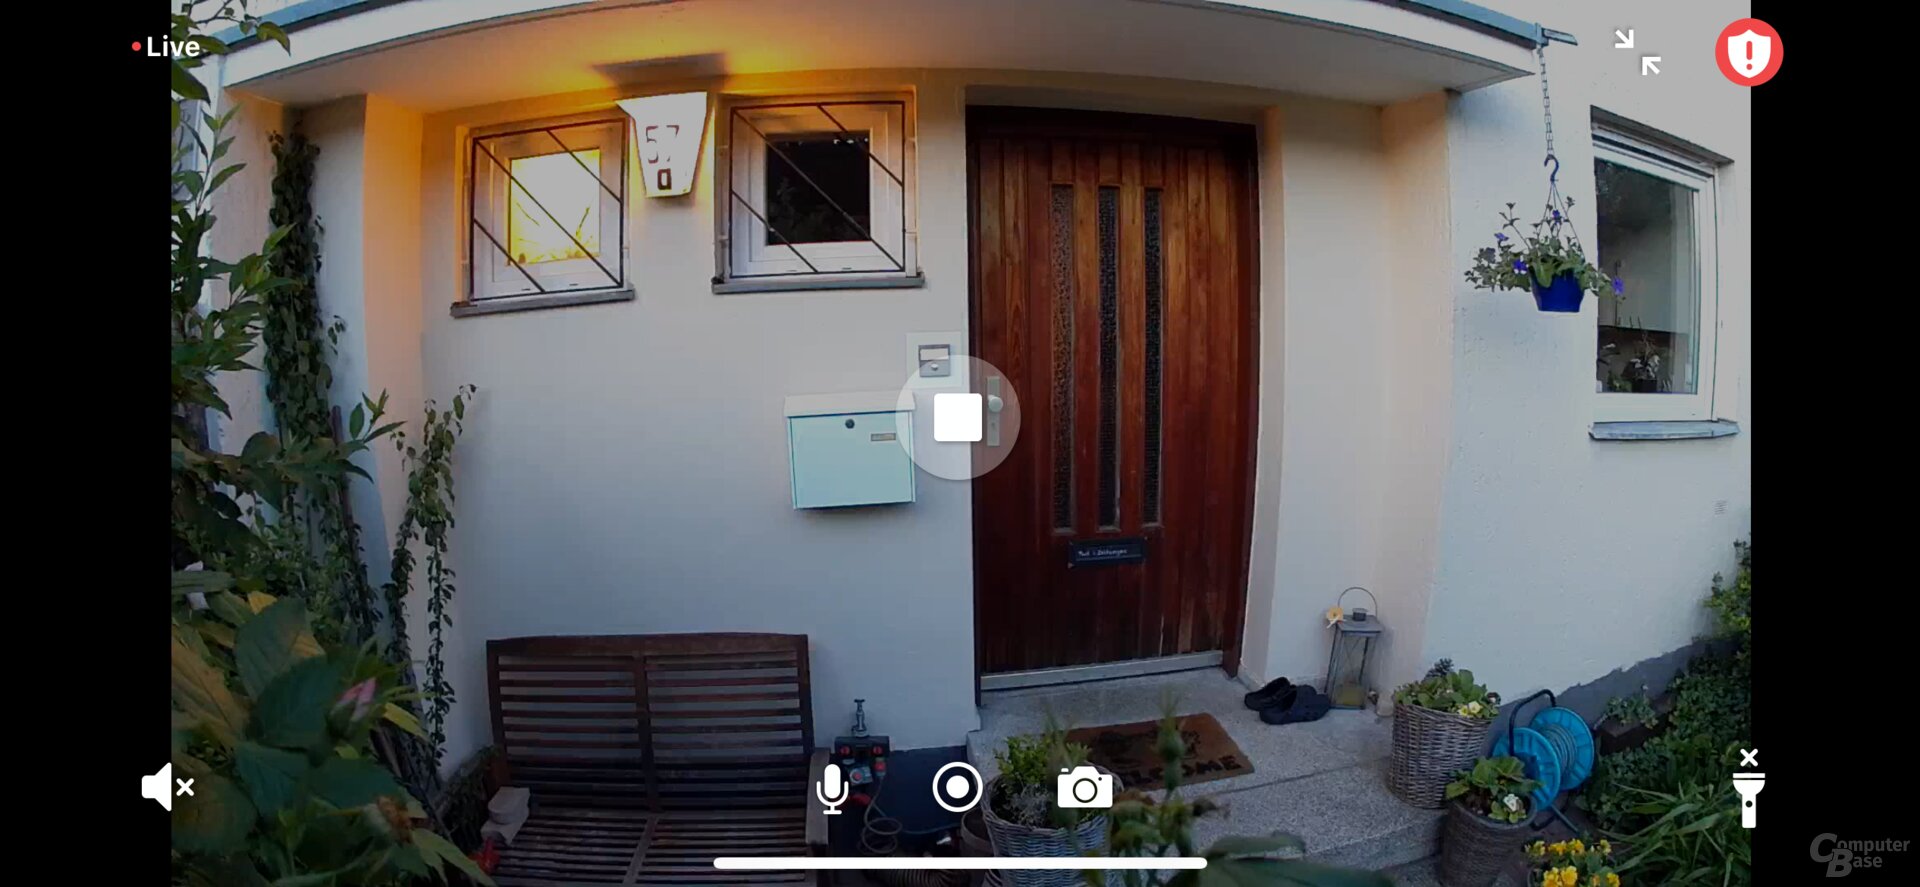 Arlo Go 2: Live-Ansicht in der App